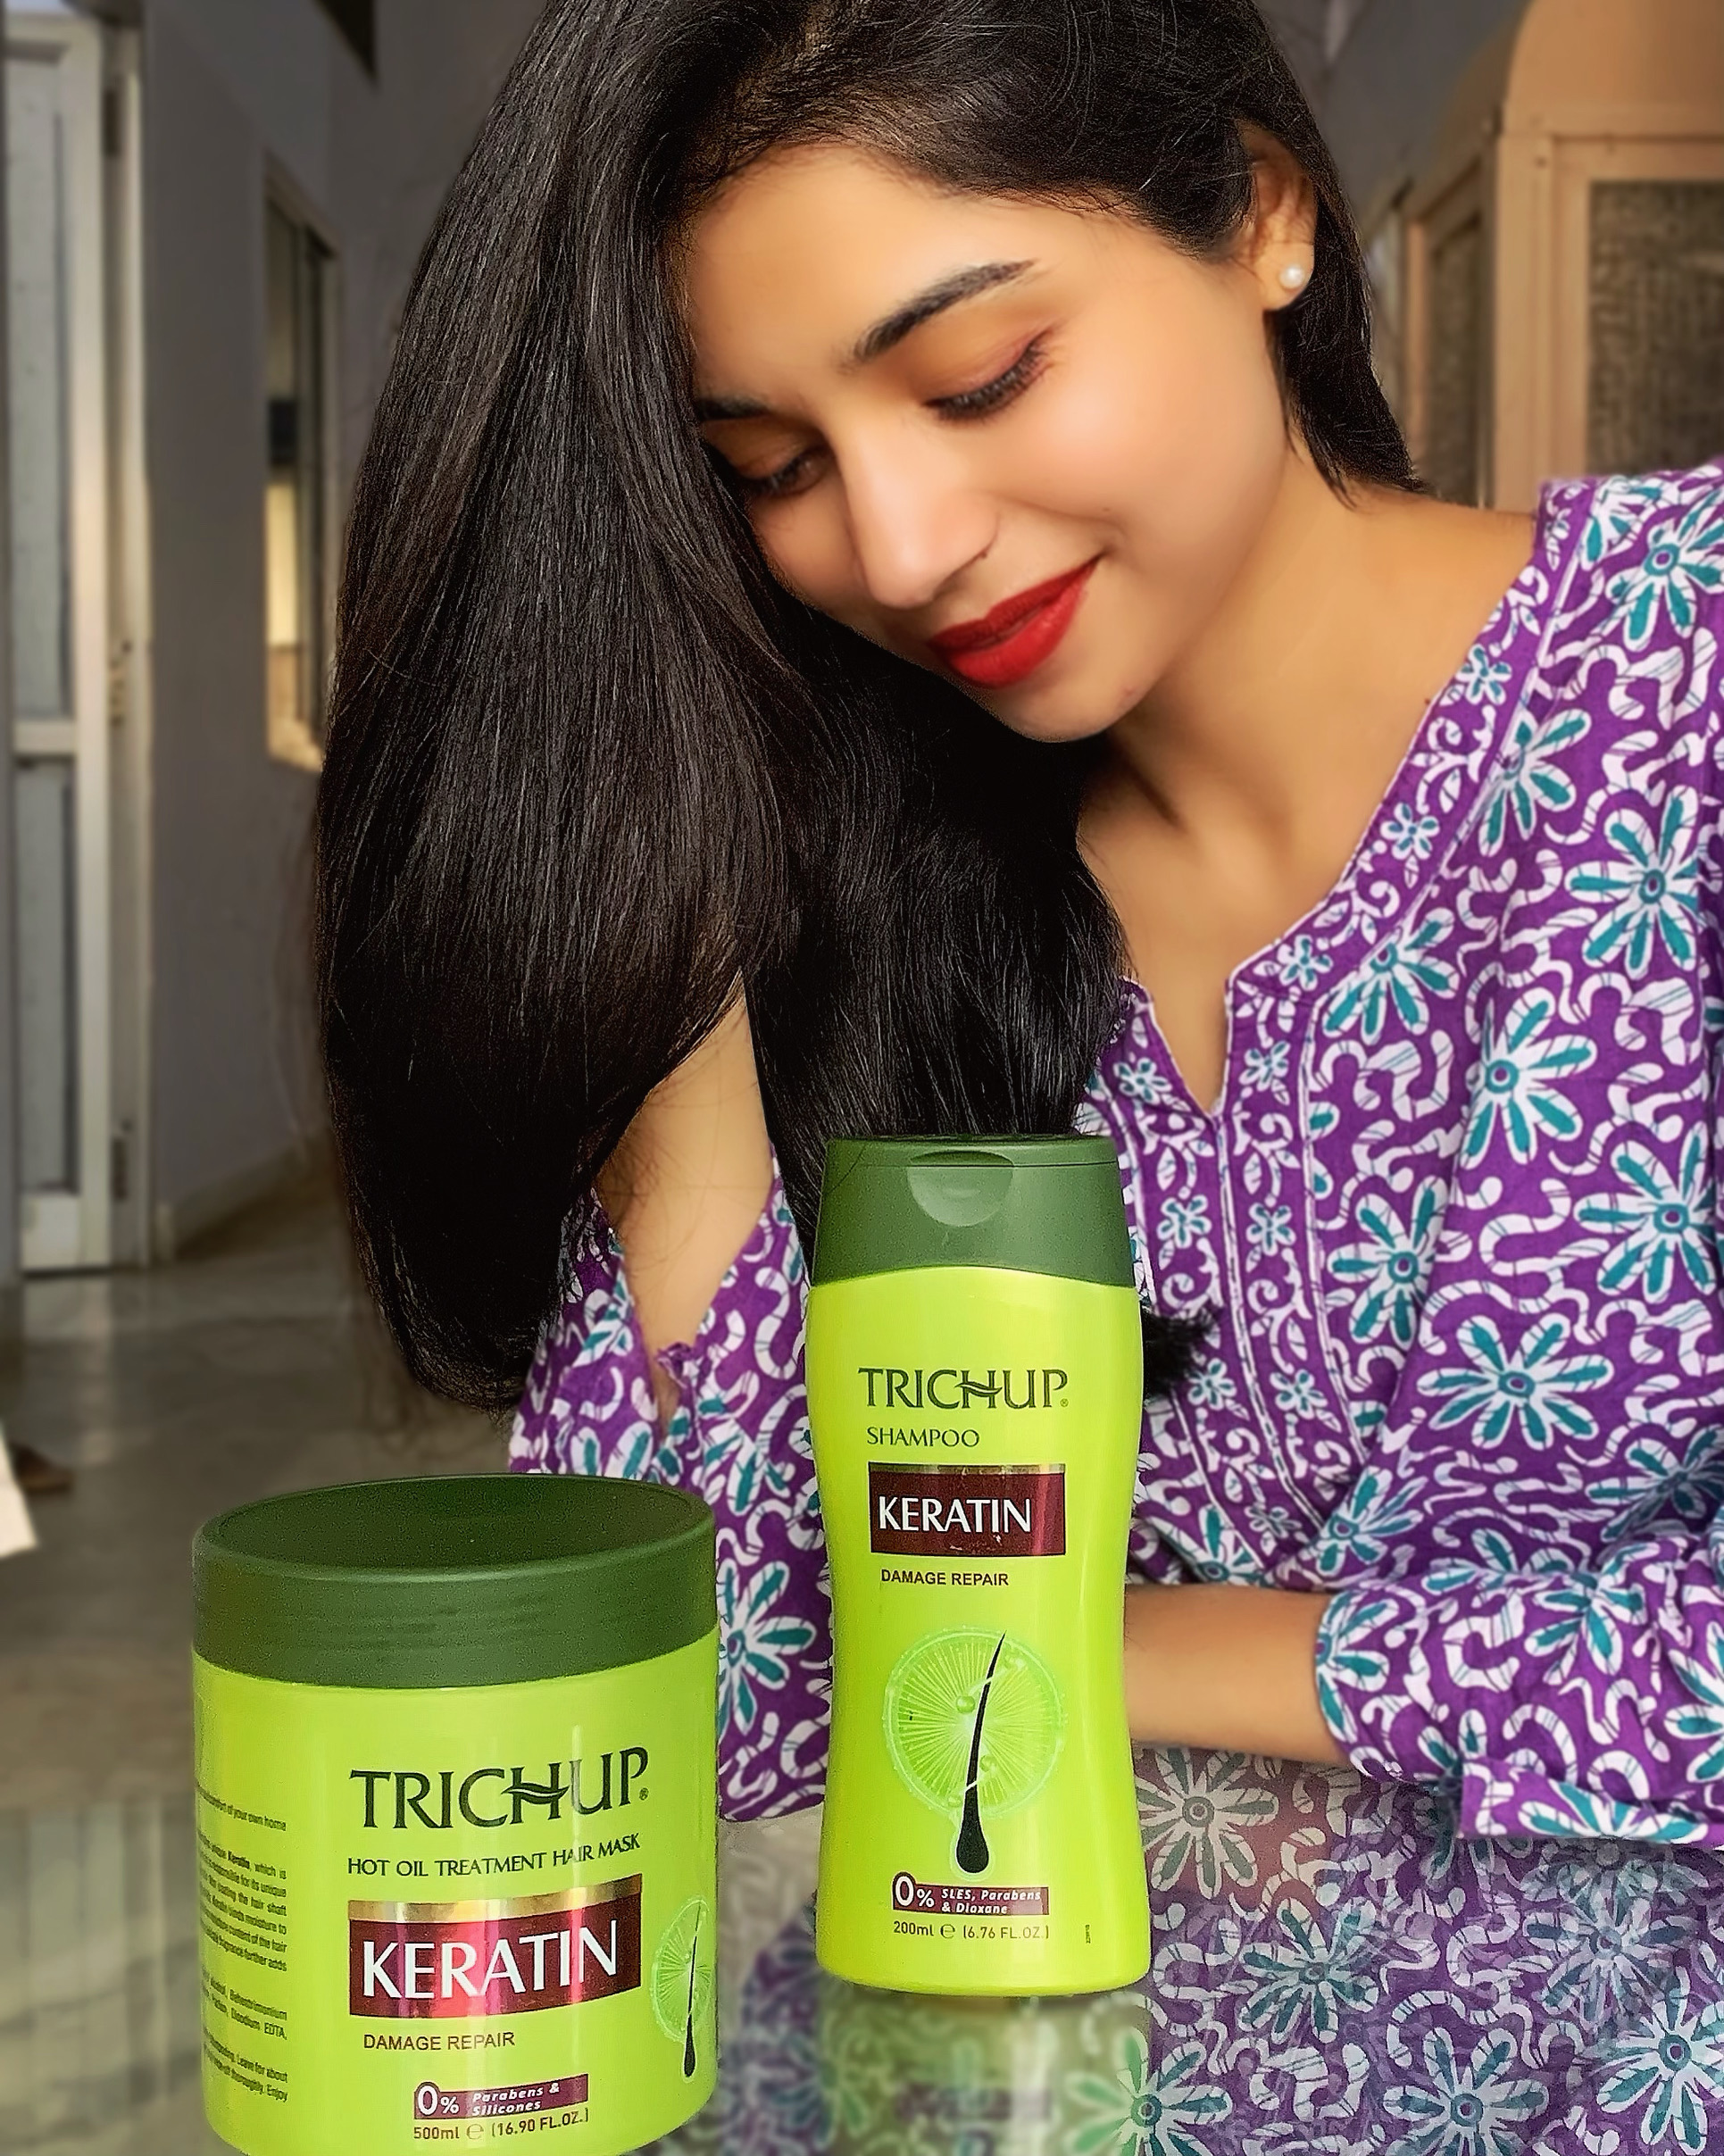 Trichup Hair Fall Control Natural Shampoo and Hair Mask – Arey Khan Sahab